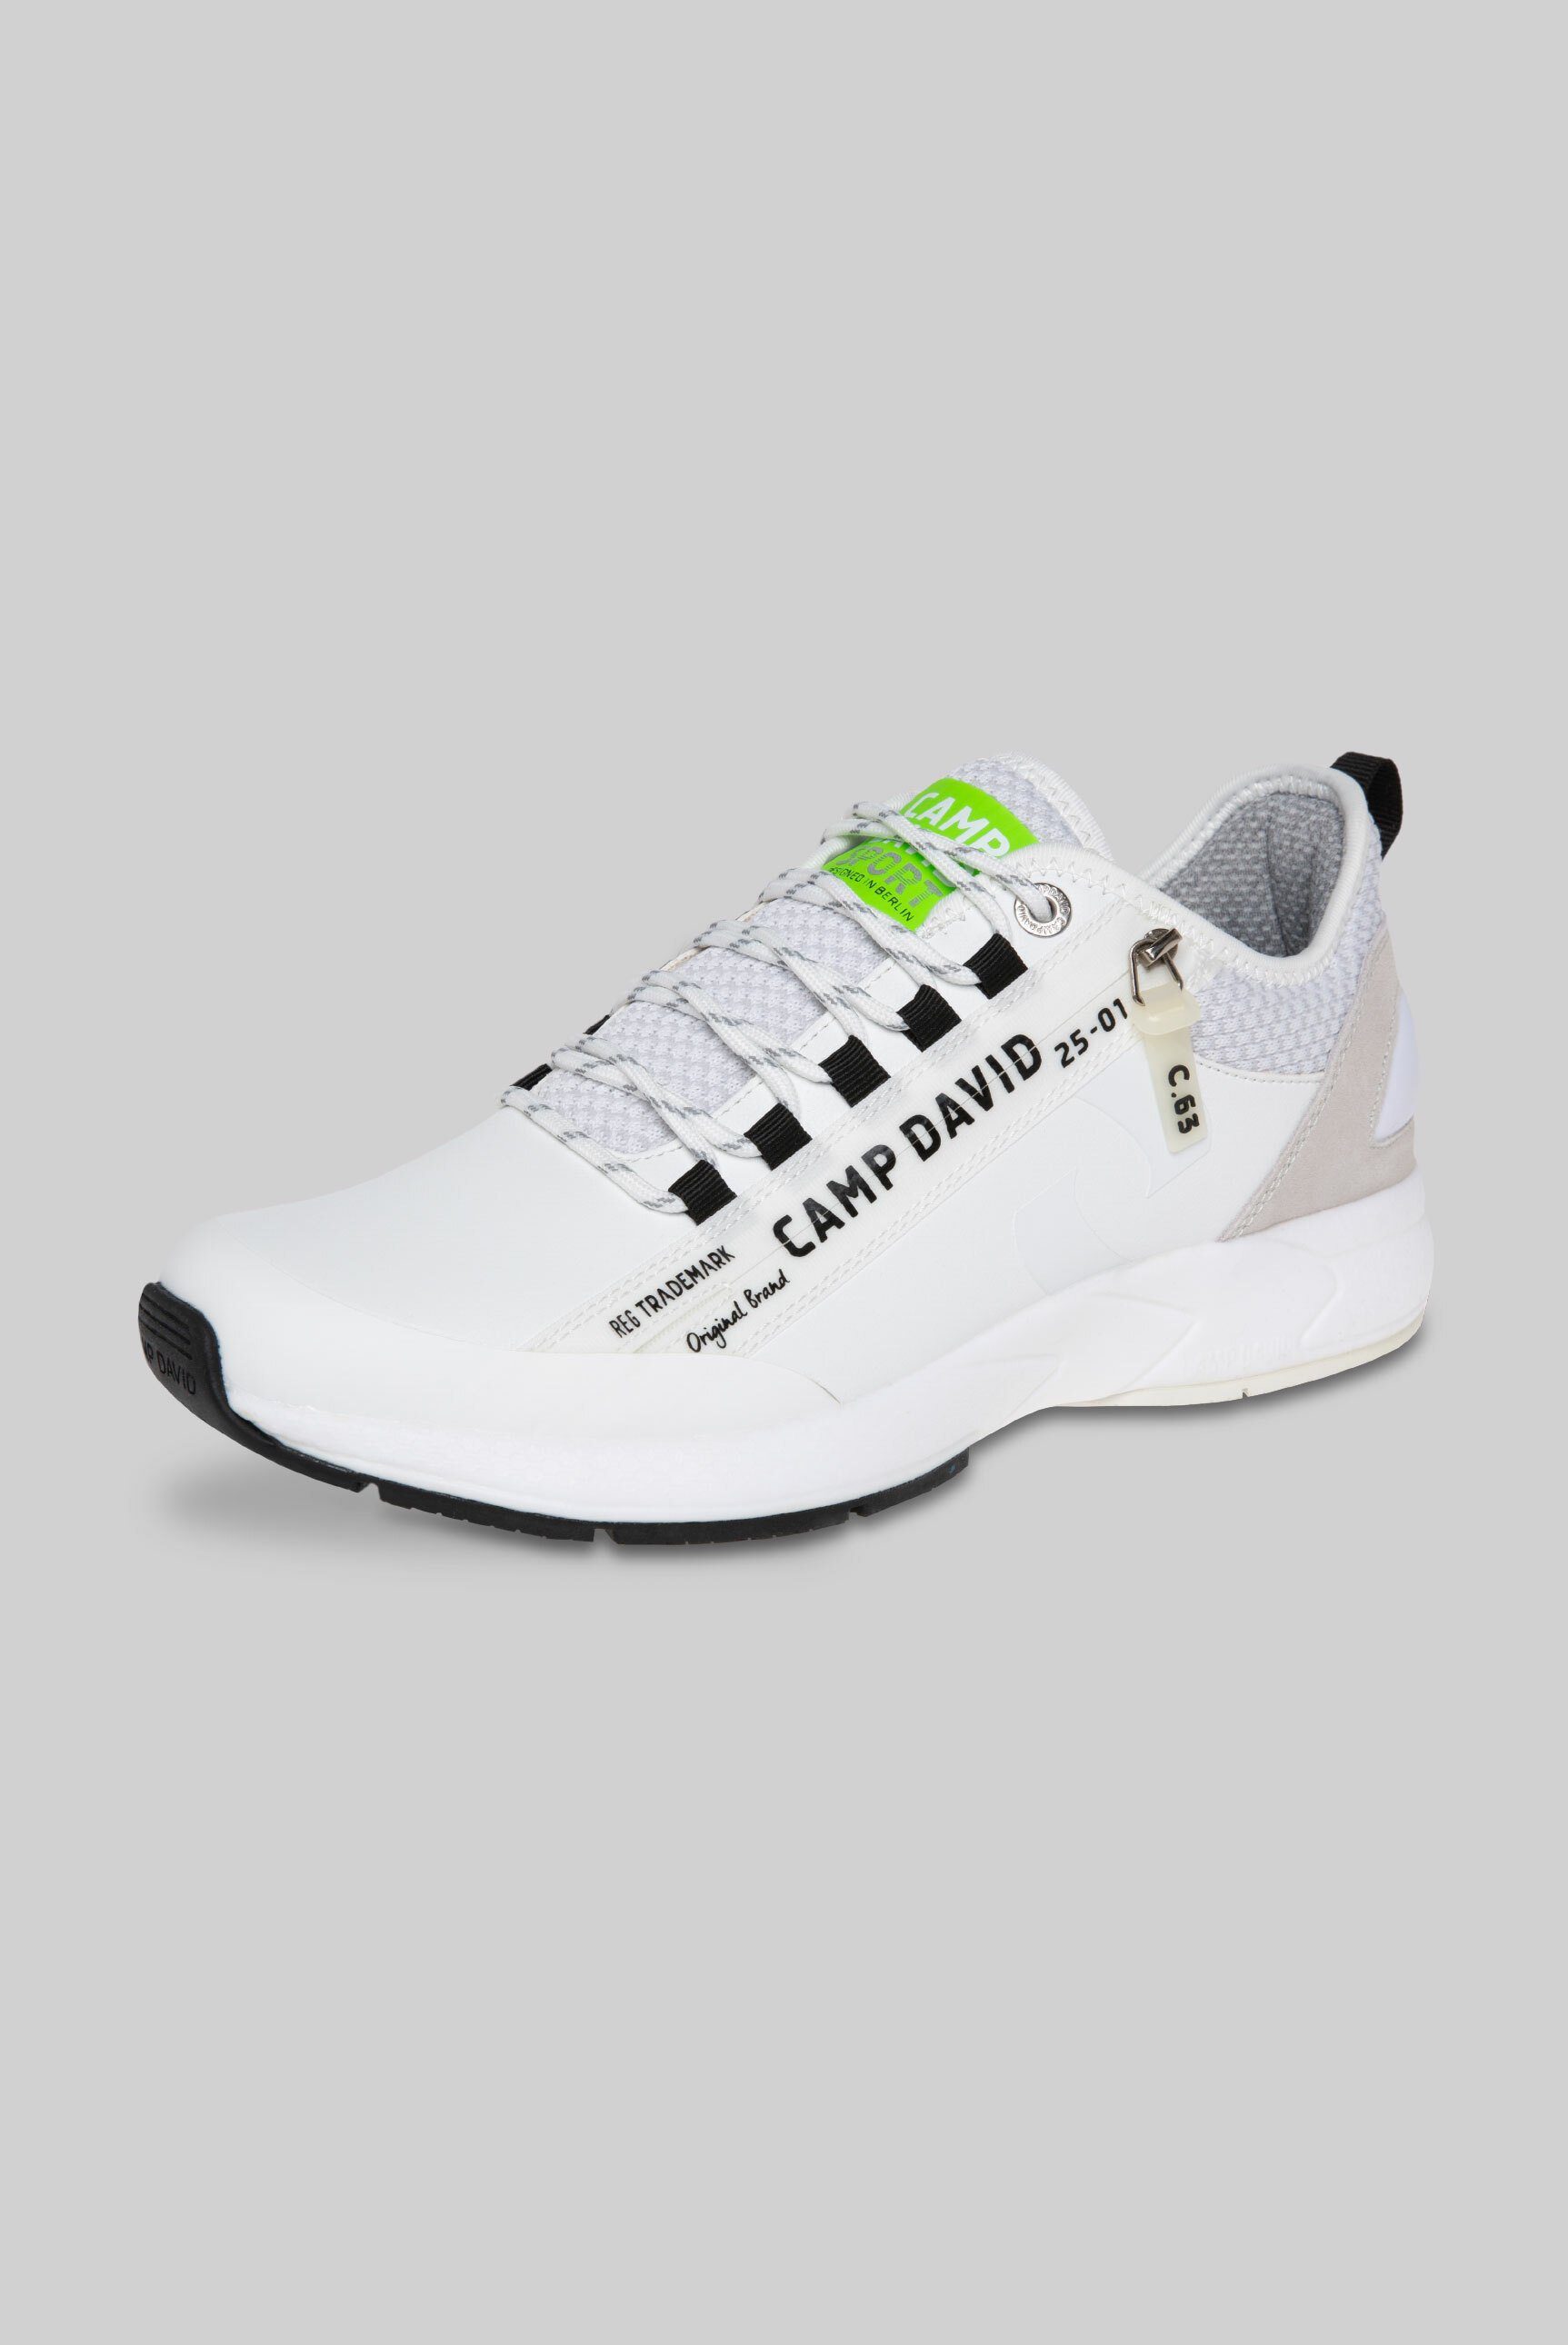 CAMP DAVID Sneaker mit Wechselfußbett, 12-Loch-Schnürung online kaufen |  OTTO